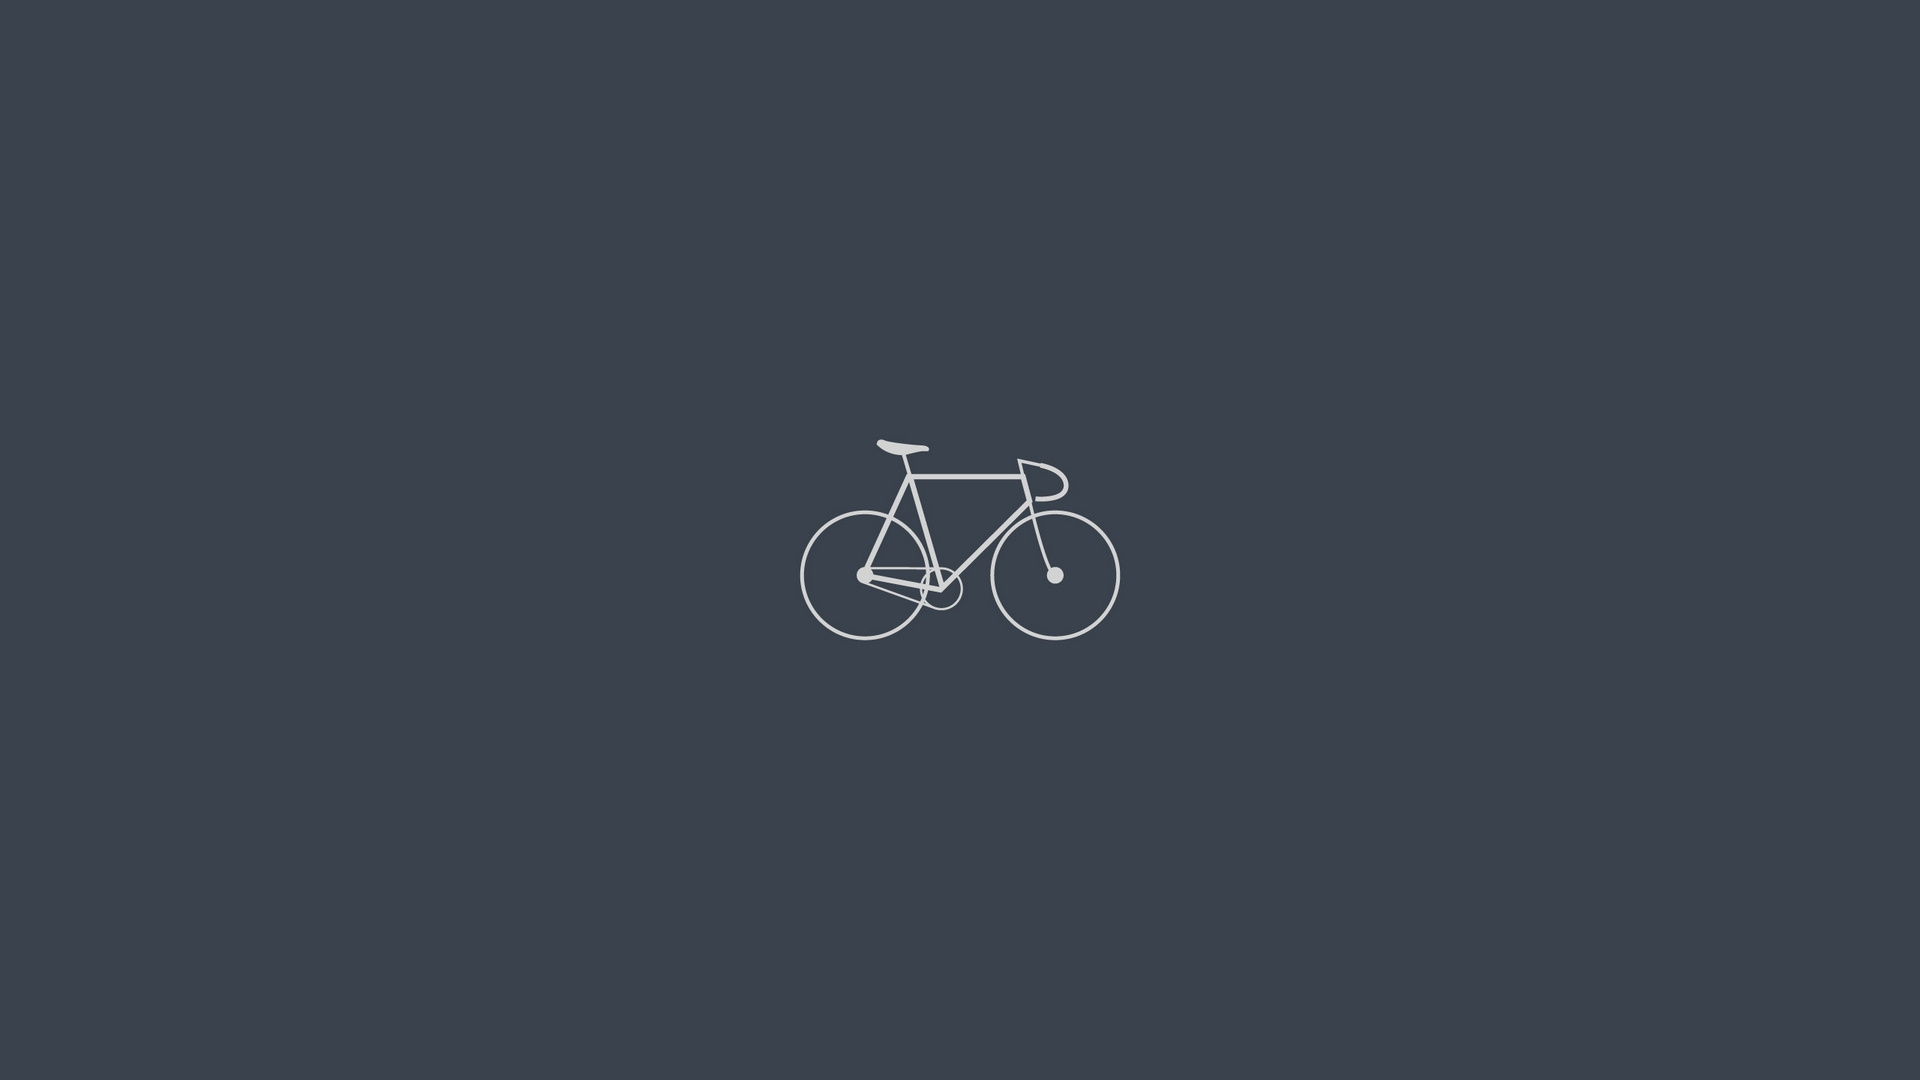 自行车, 简约, 灰色 壁纸 1920x1080 允许